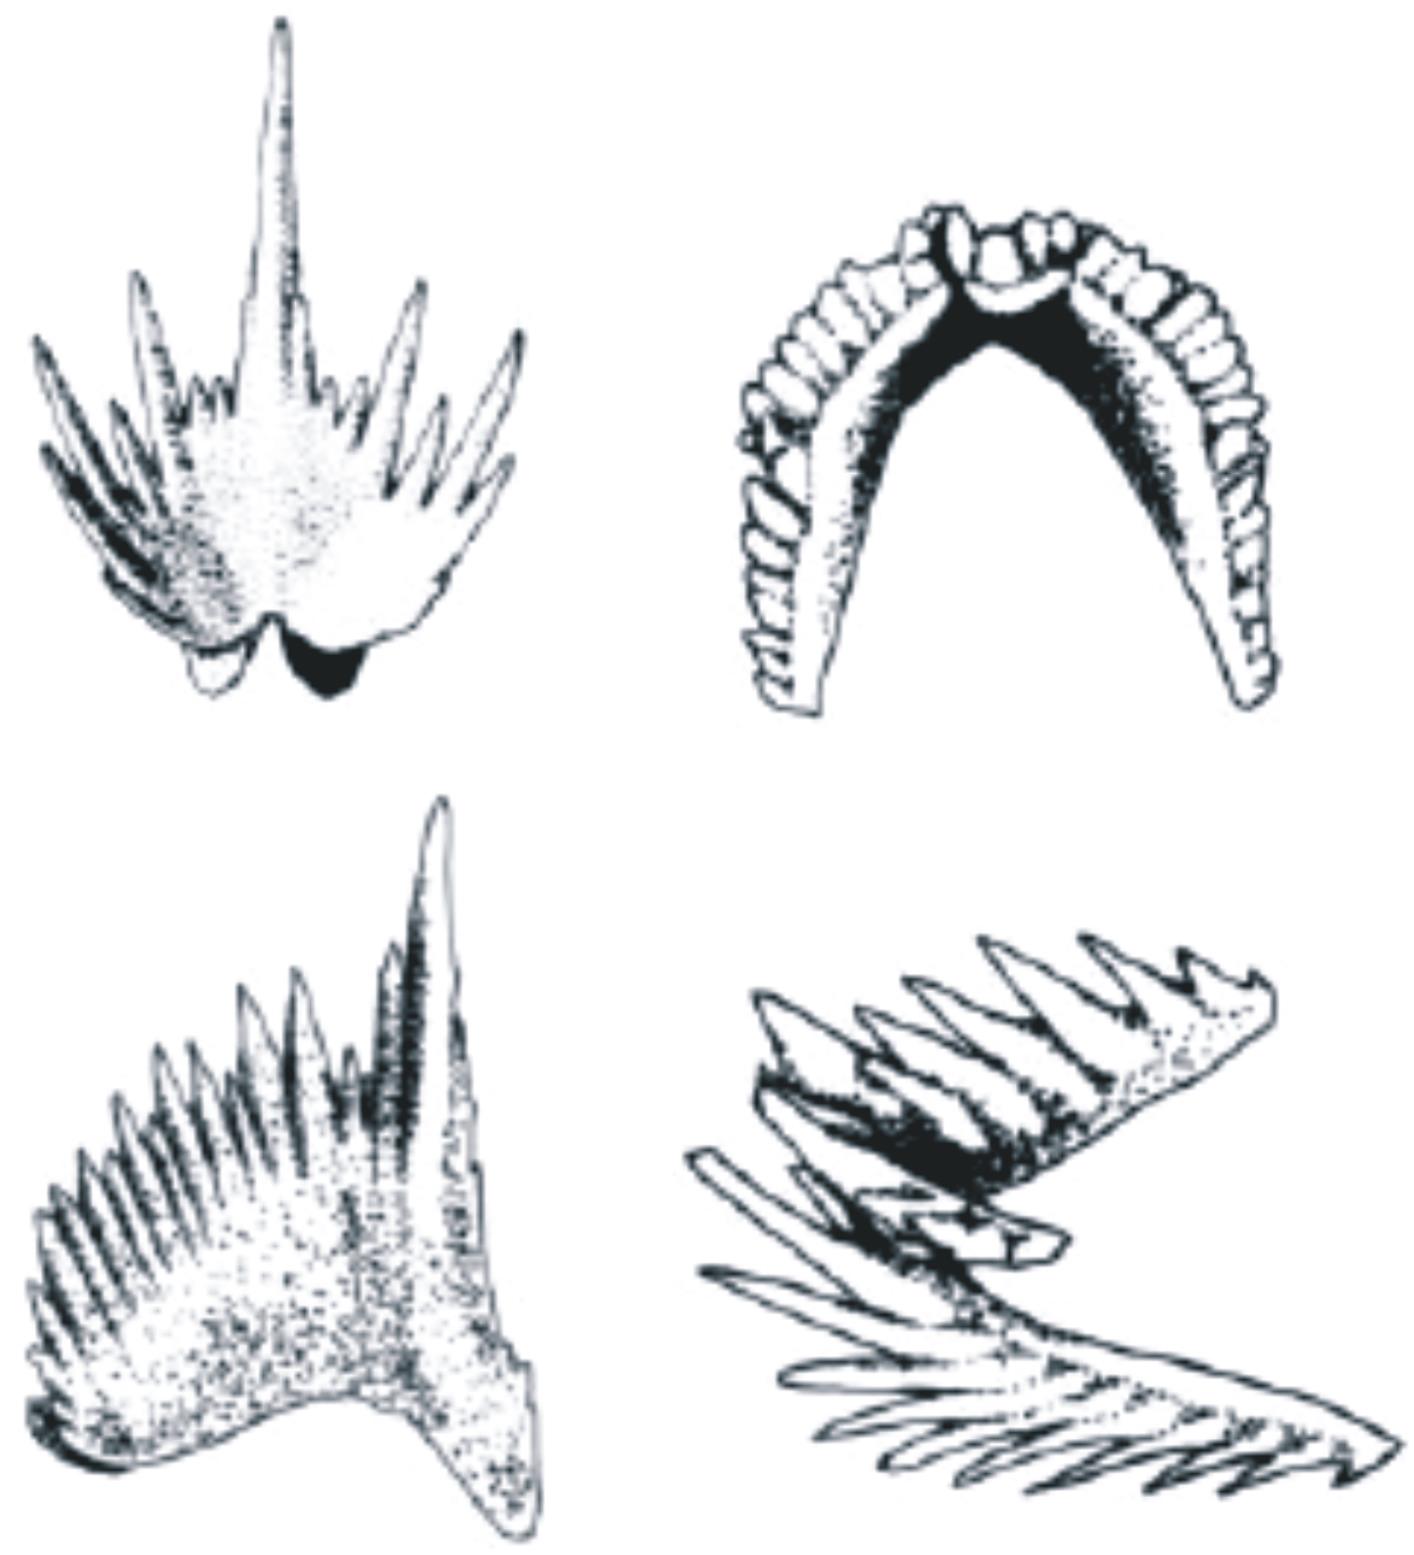 ΟΜΟΤΑΞΙΑ CONODONTA (ΚΩΝΟΔΟΝΤΑ) Κάμβριο-Τριαδικό Ποικιλία στη μορφολογία των οδοντικών στοιχείων της μασητικής συσκευής των κωνοδόντων. Κατά Donoghue (2001).